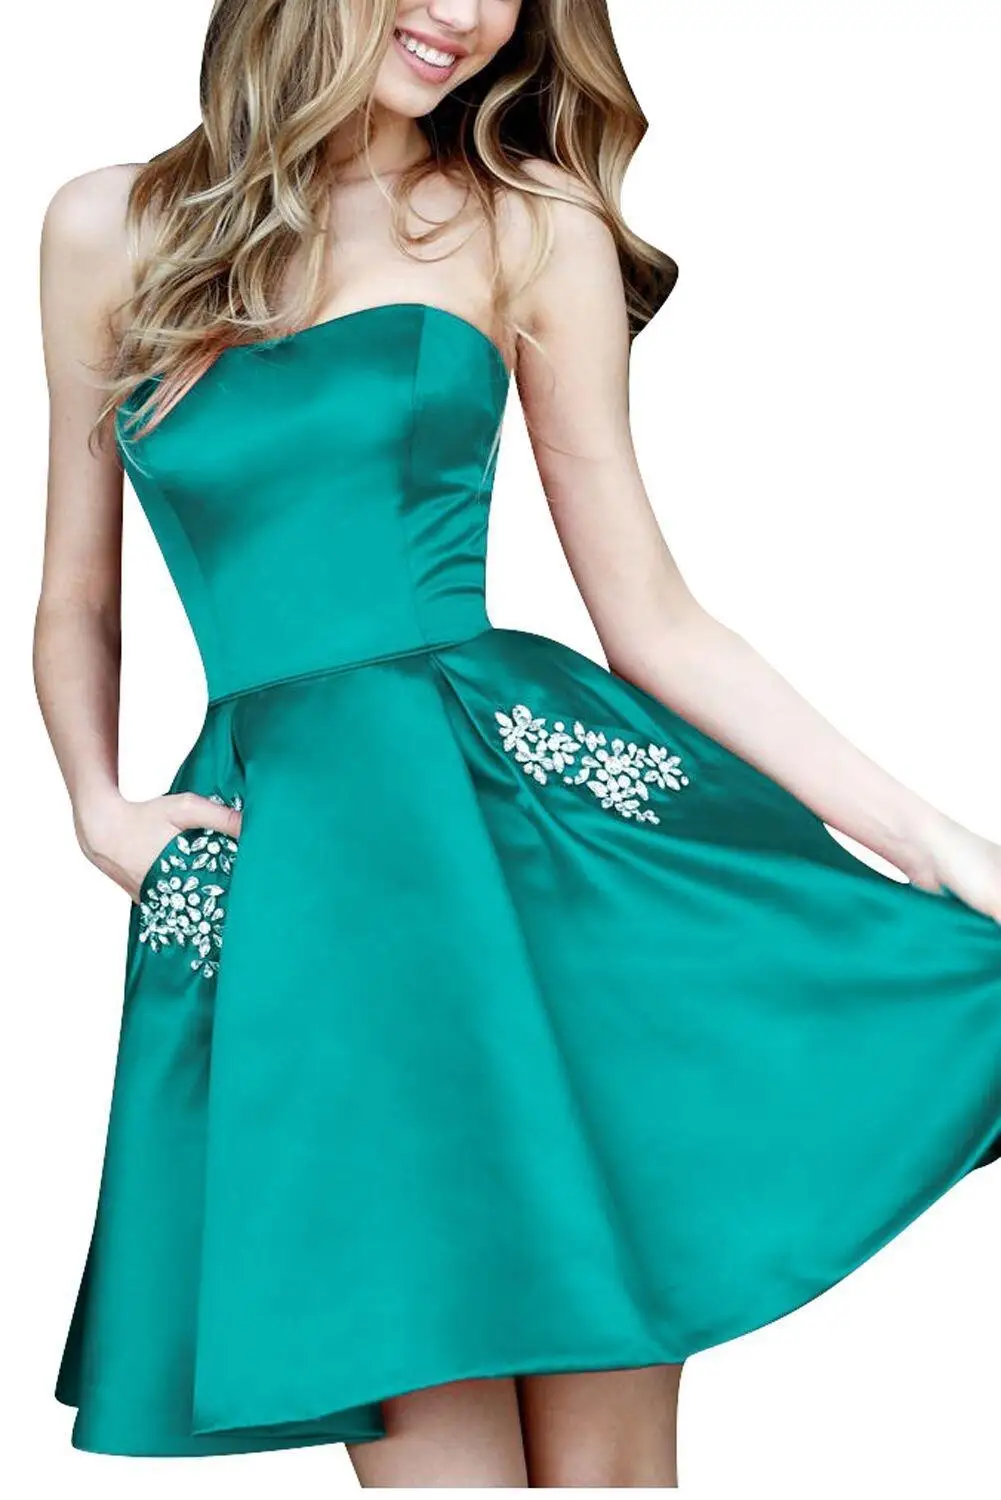 Robe De Soiree сексуальные короткие коктейльные платья с кристальными карманами, атласные вечерние платья, Короткие мини платья для выпускного вечера - Цвет: Green